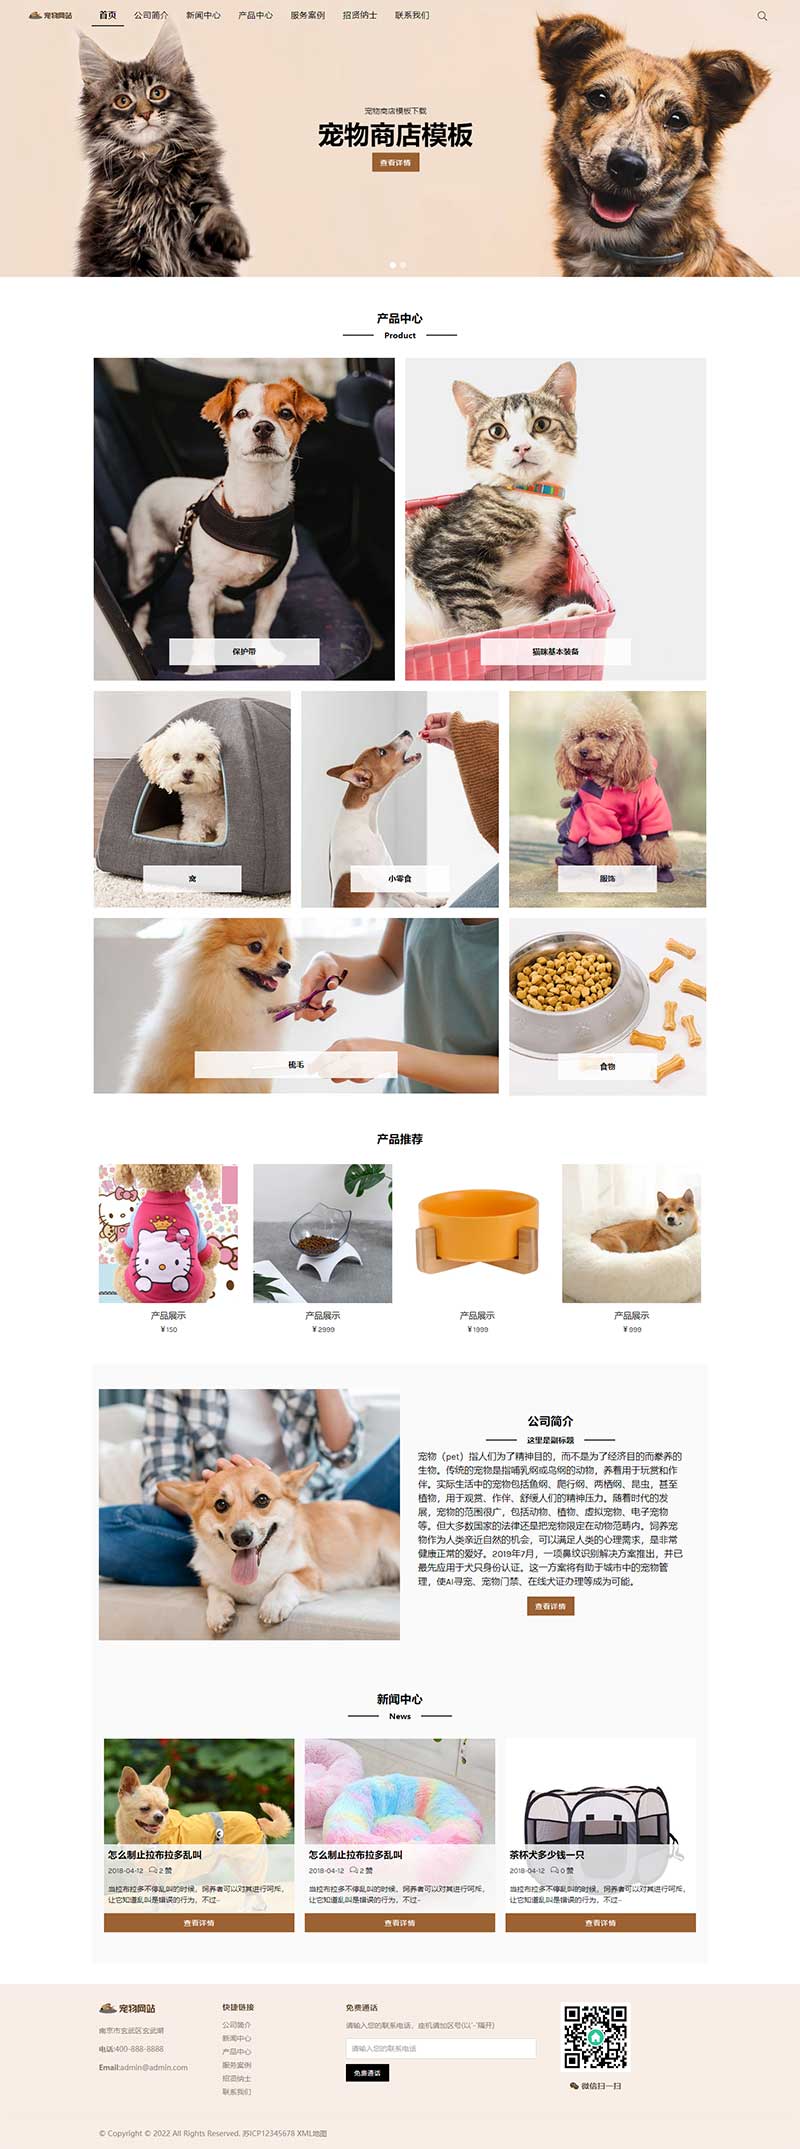 宠物商店宠物装备类网站WordPress模板演示图